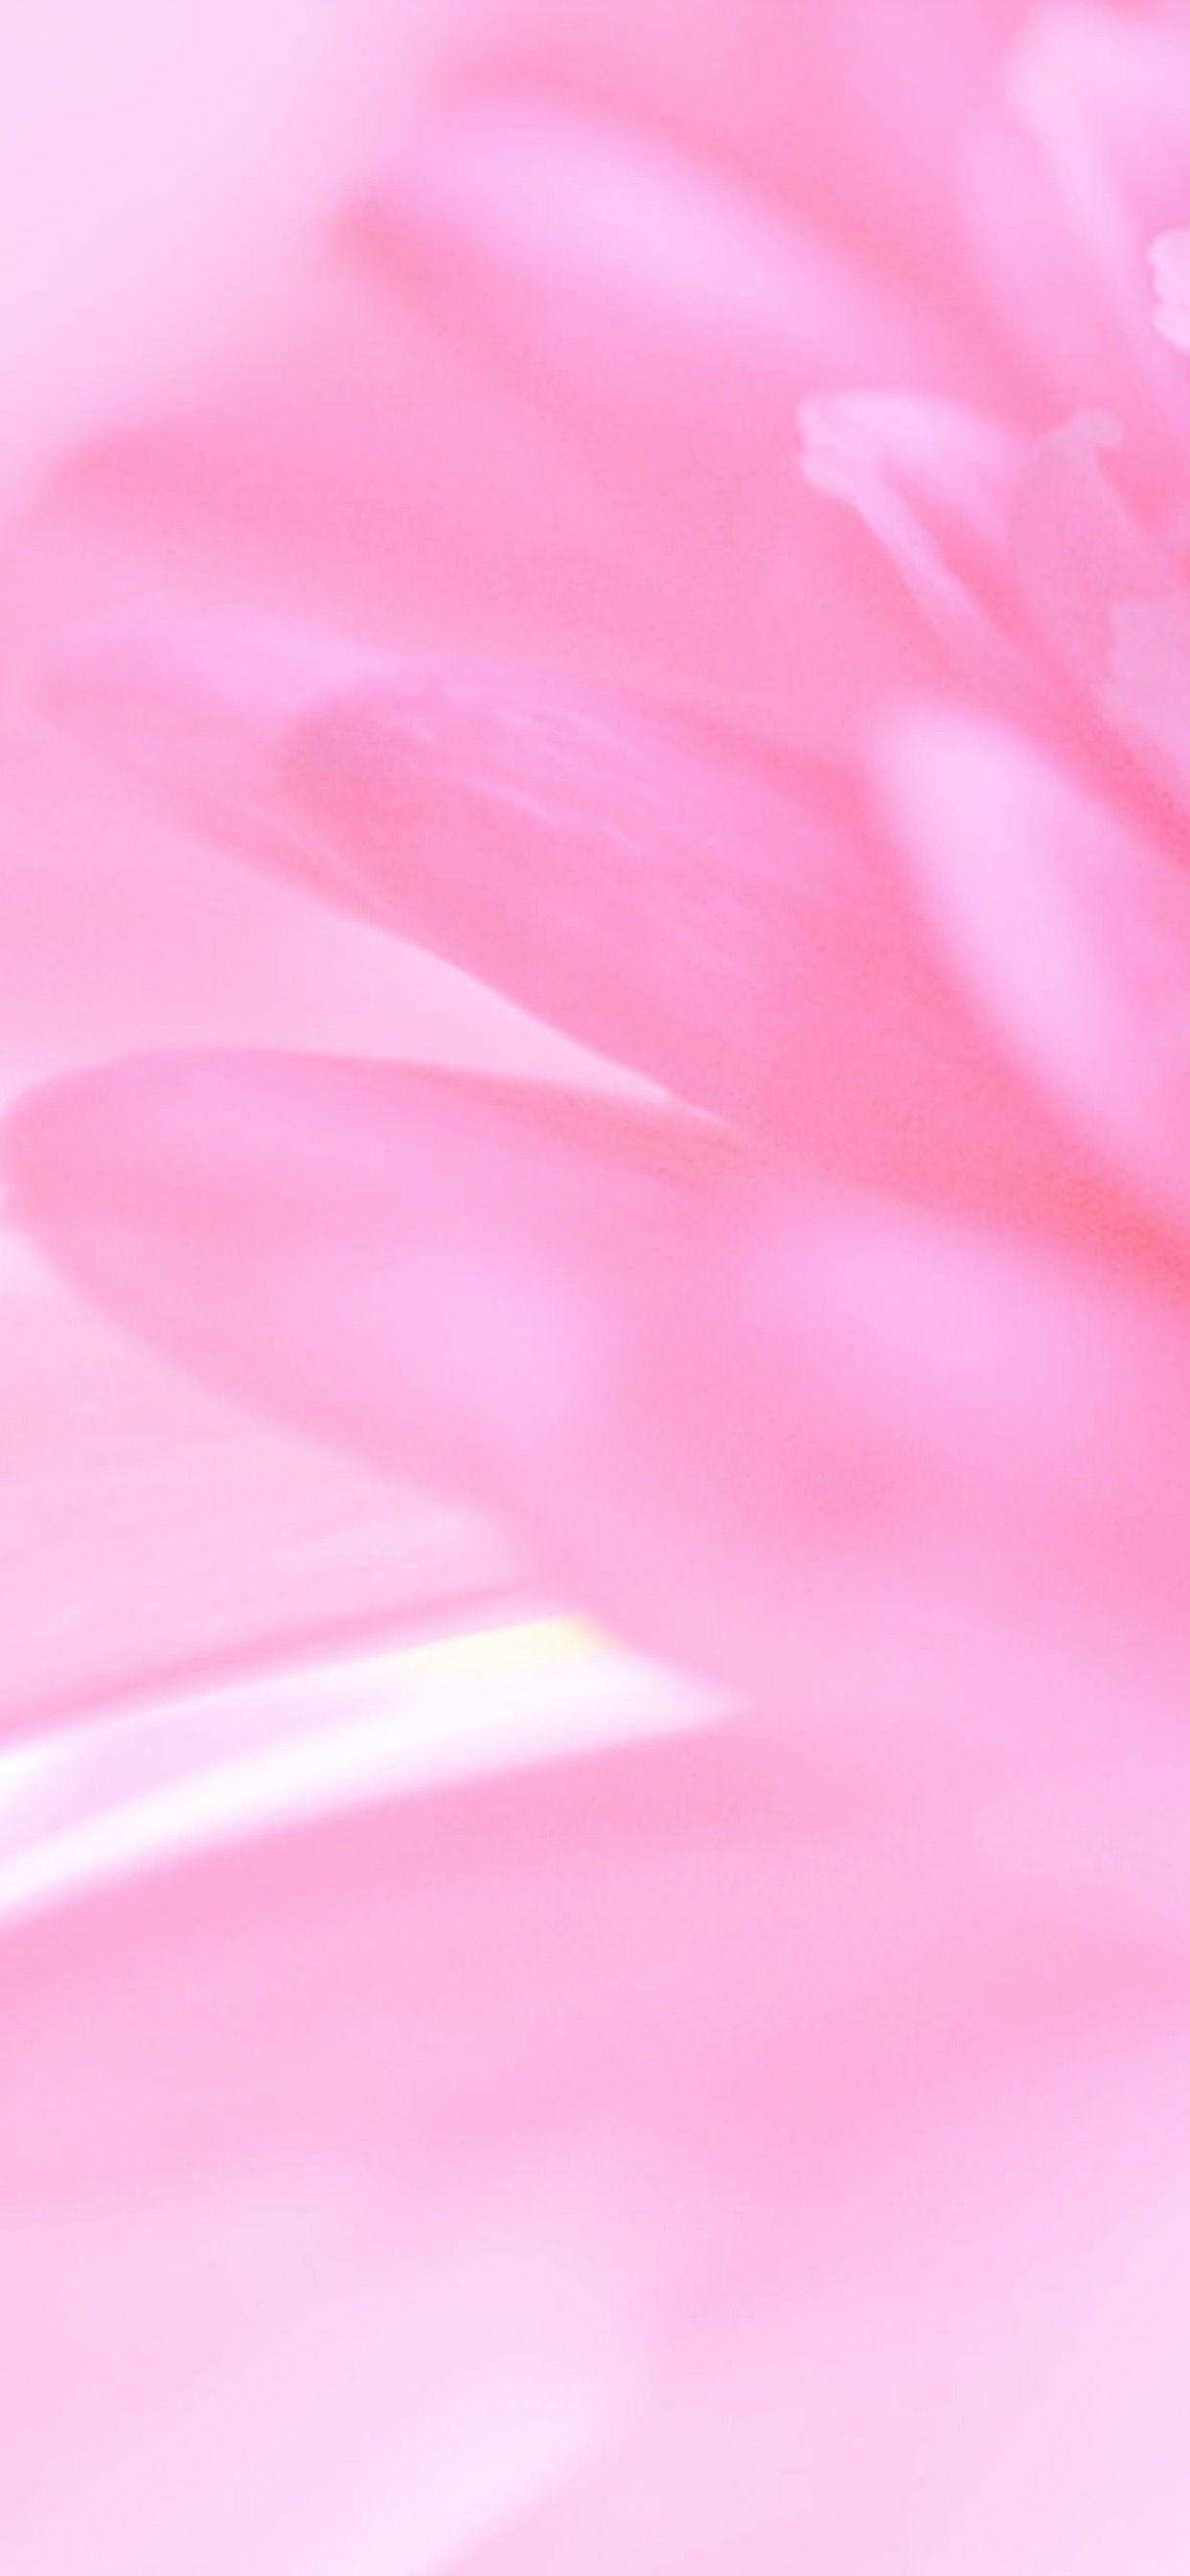 Với hình nền iPhone XS Max hoa tự nhiên màu hồng, bạn sẽ được trở về với thiên nhiên trong lành và tận hưởng vẻ đẹp đơn giản nhưng cảm động của những bông hoa. Sự kết hợp tinh tế giữa hình ảnh và màu sắc sẽ khiến cho chiếc điện thoại của bạn trở nên rực rỡ hơn bao giờ hết.